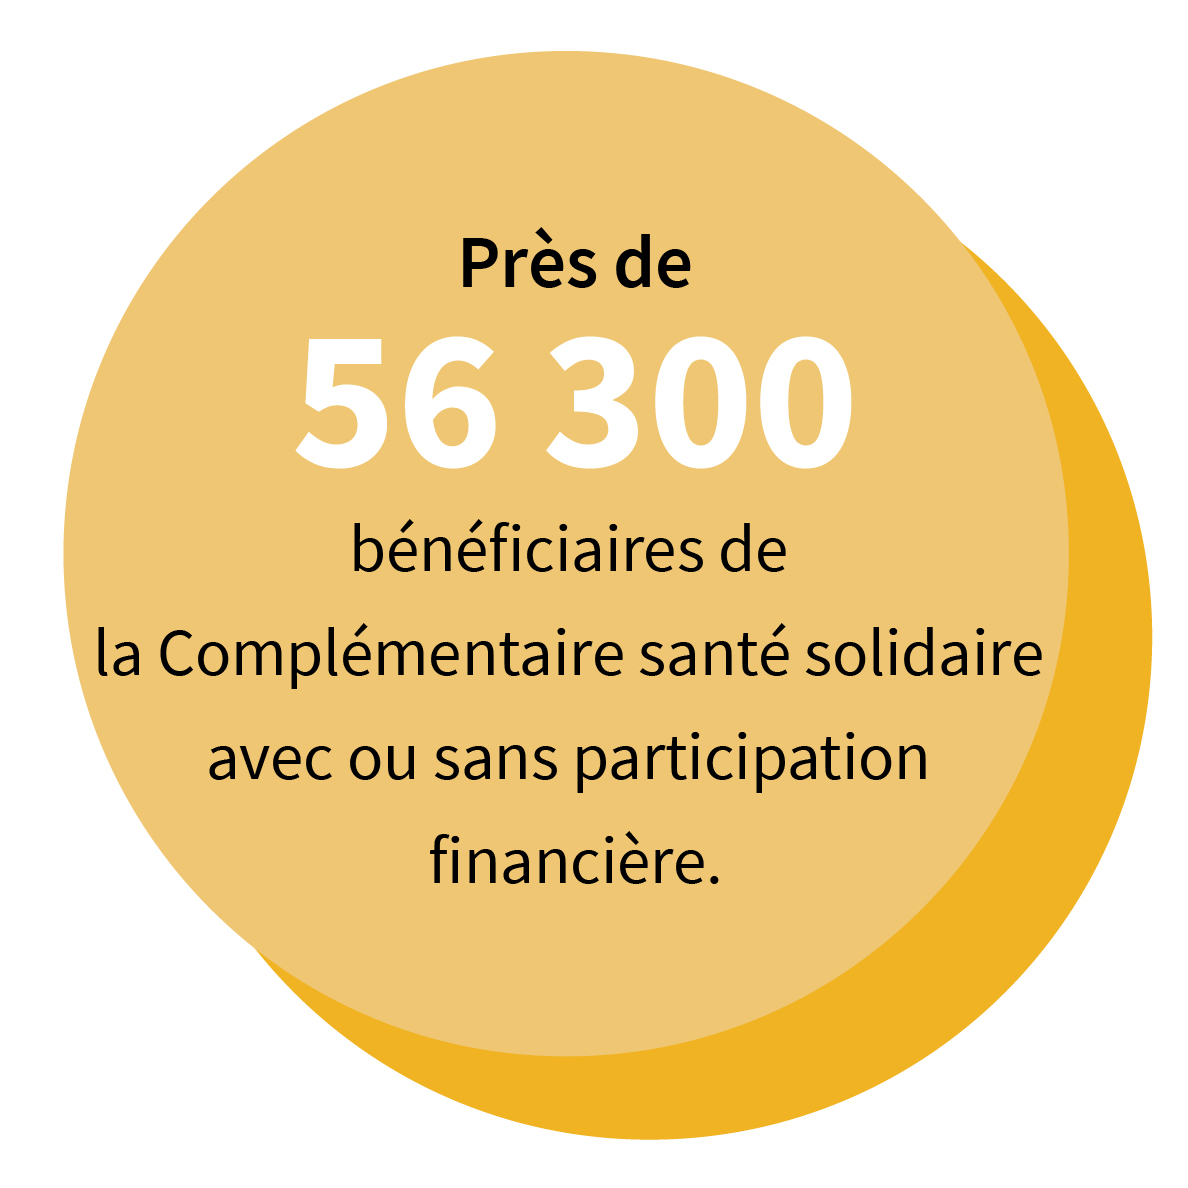 Près de 56 300 bénéficiaires de la Complémentaire santé solidaire avec ou sans participation financière.